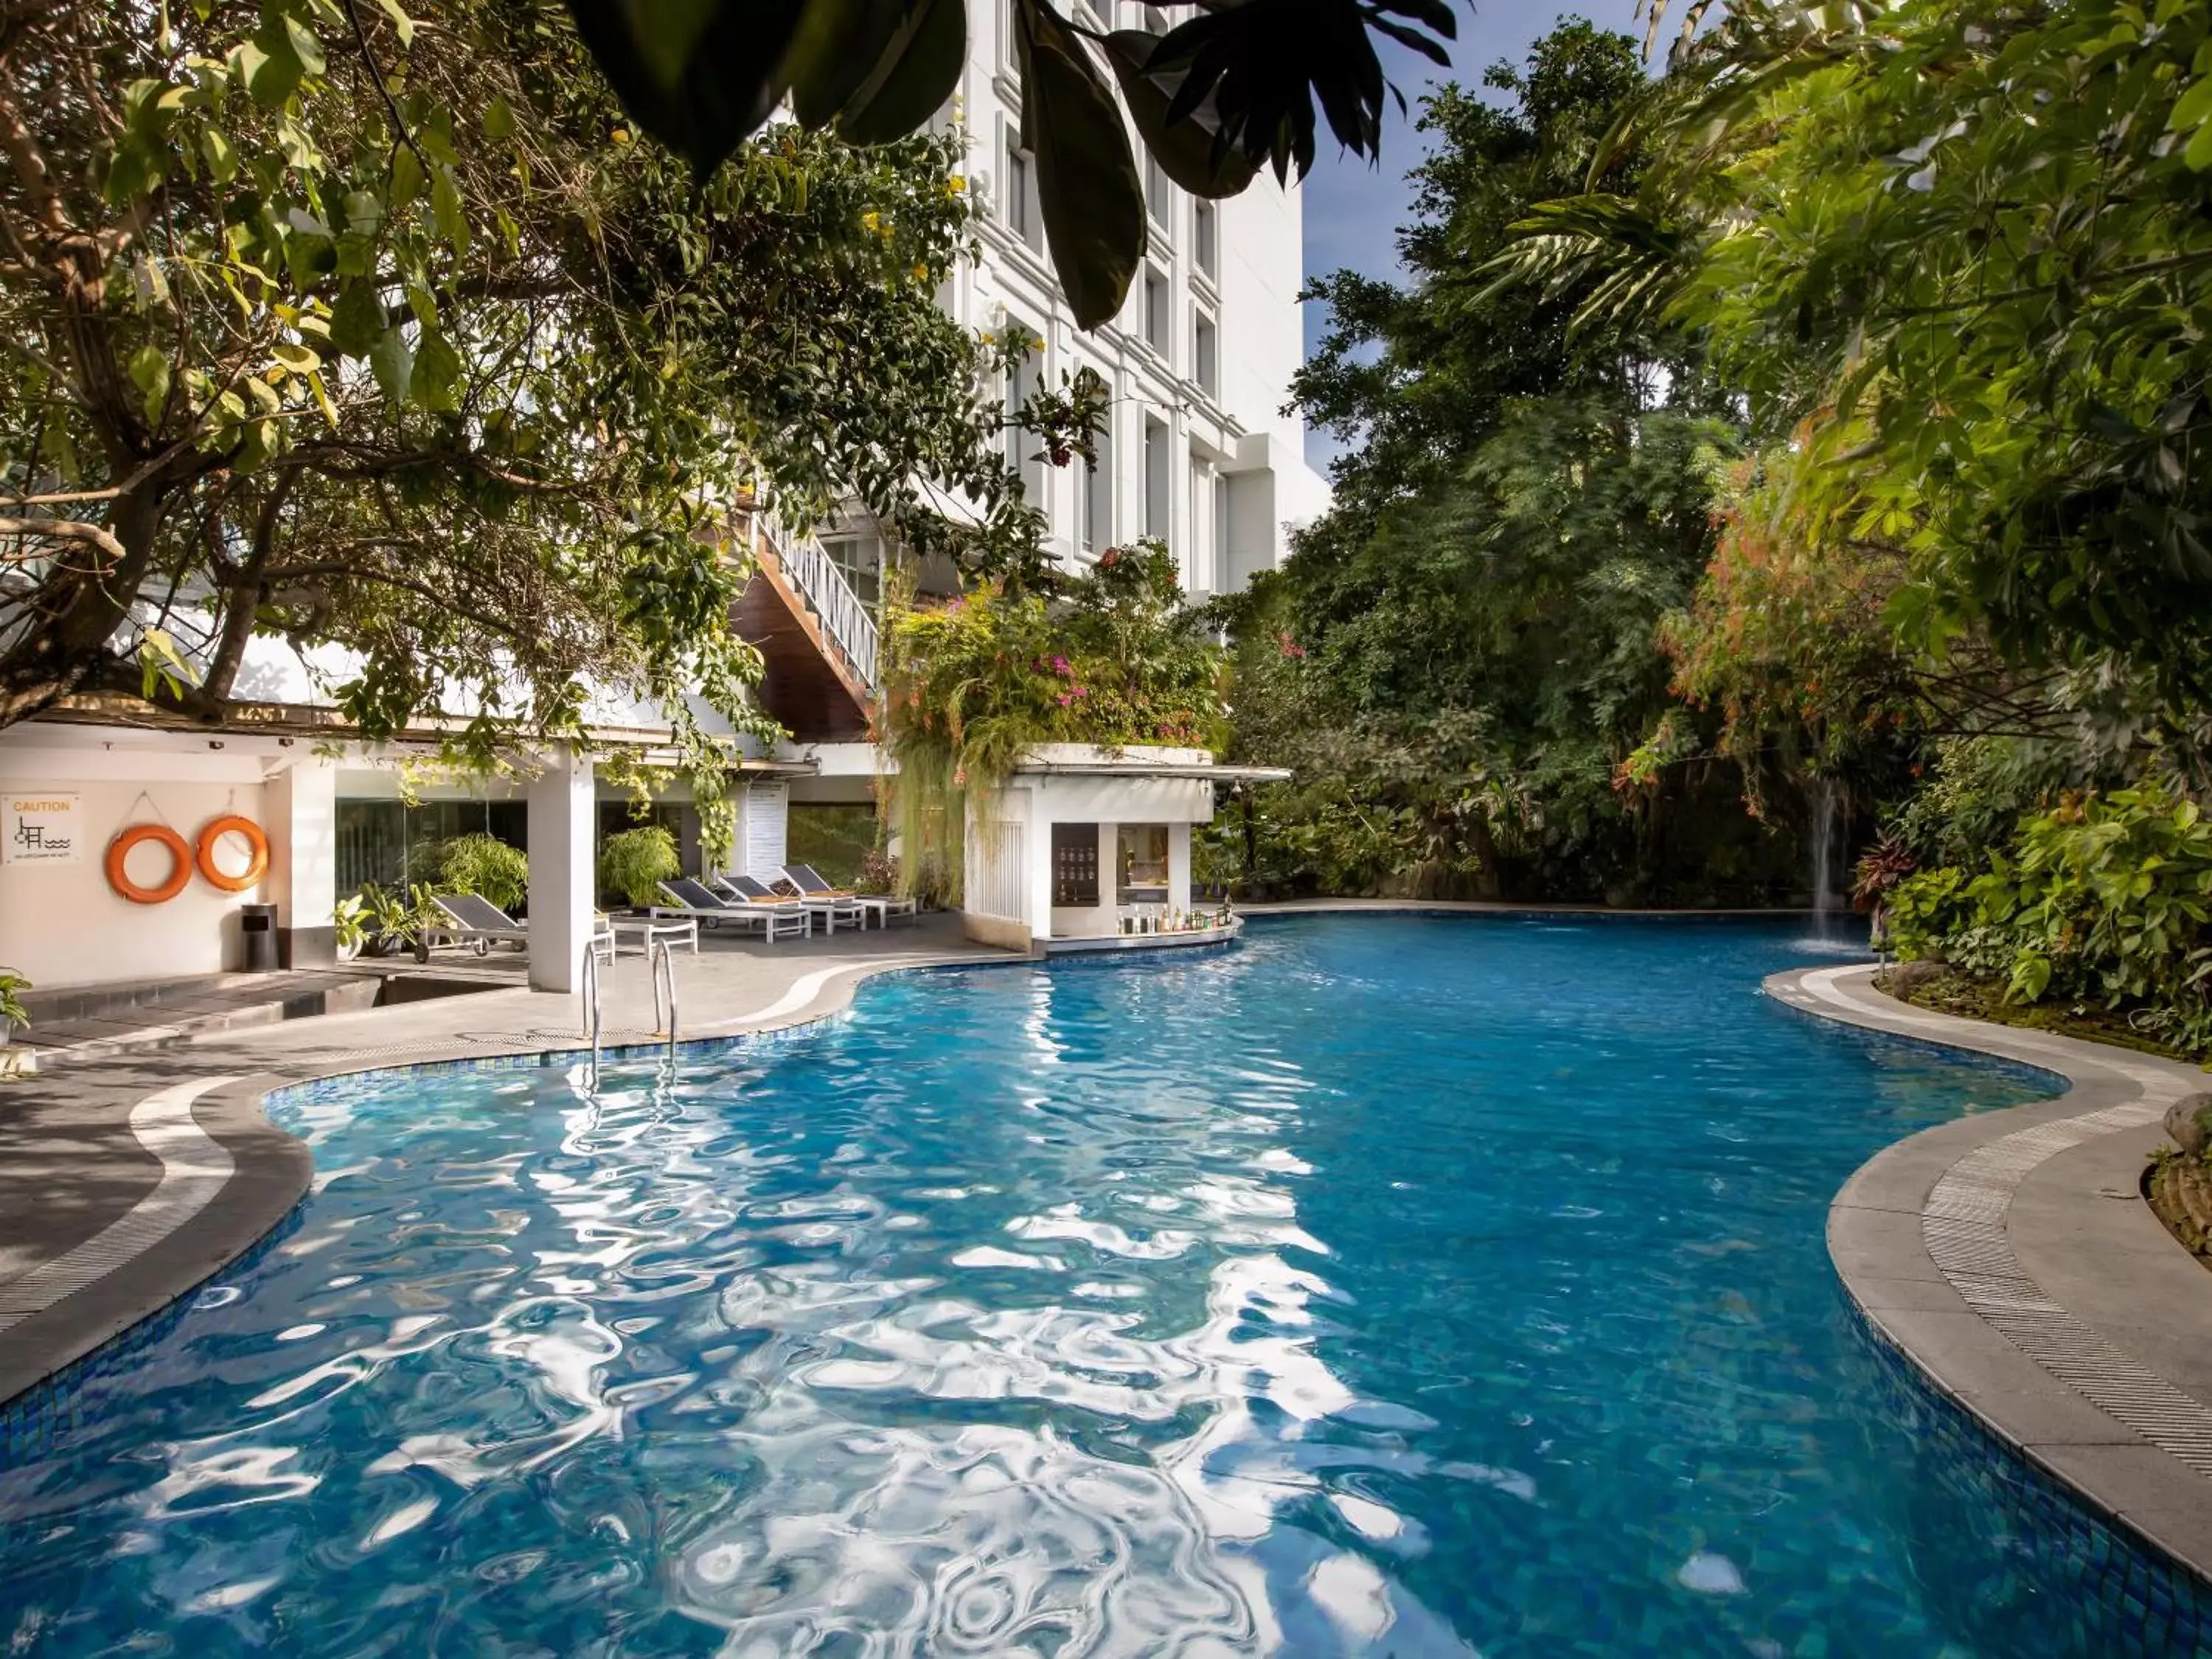 Swimming Pool in Jambuluwuk Malioboro Hotel Yogyakarta